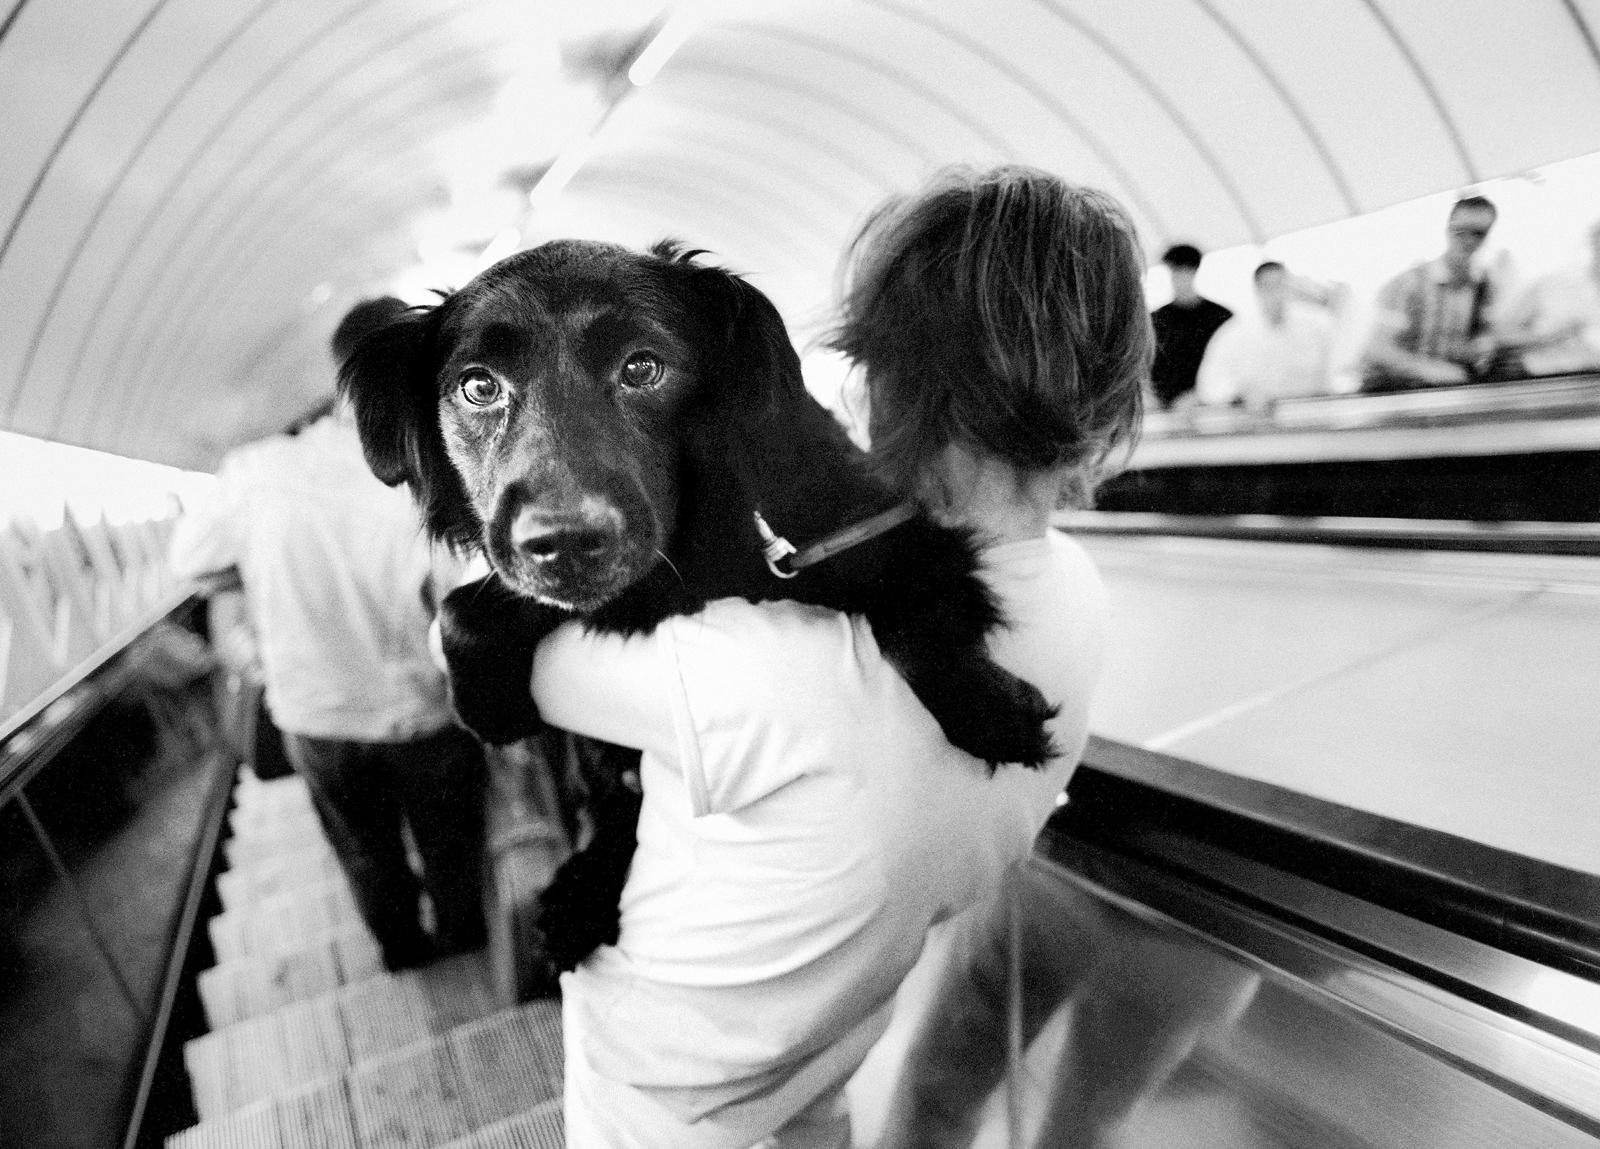 Metro Hund – signierte limitierte Auflage von Stillleben, Schwarz-Weiß, groß, zeitgenössisch